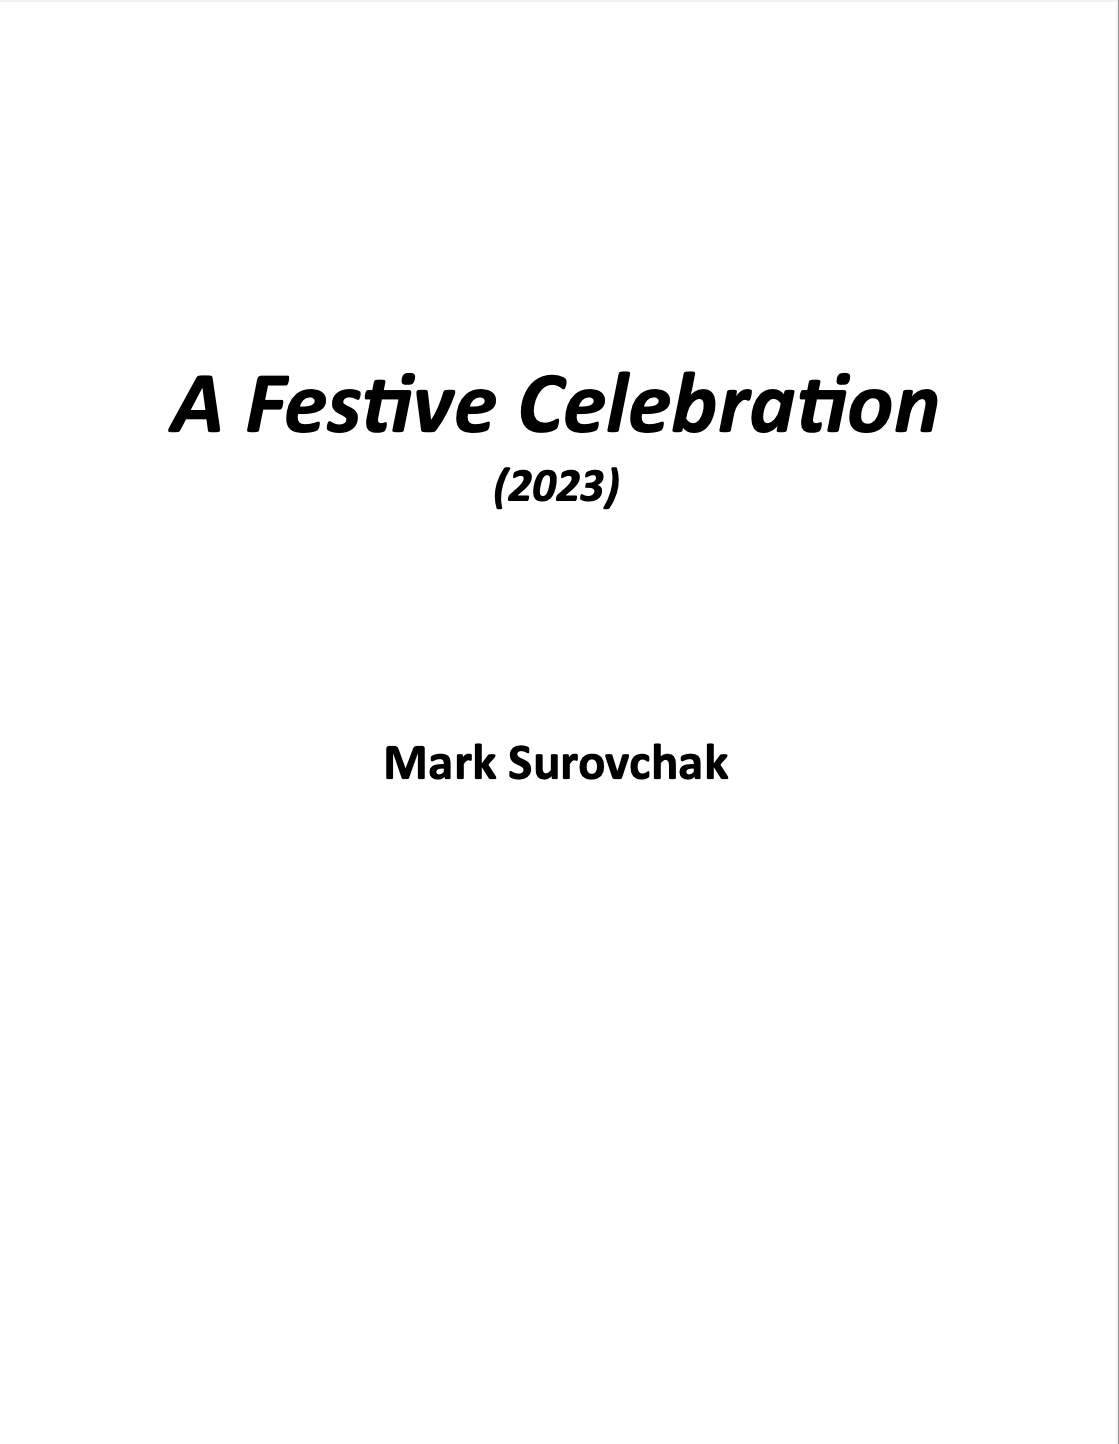 A Festive Celebration by Mark Surovchak